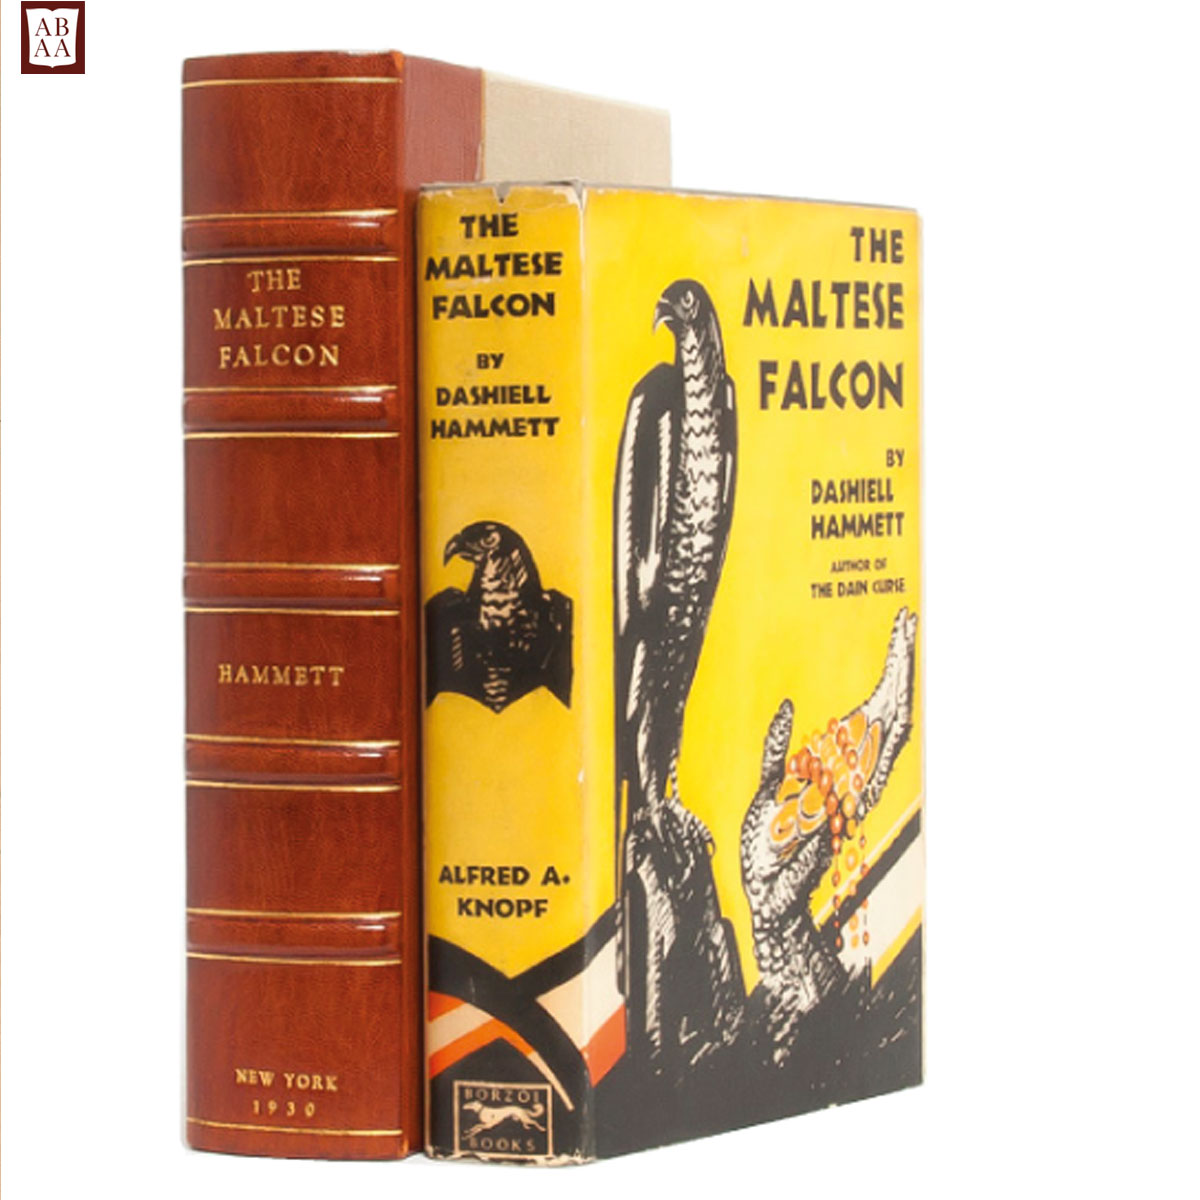 Maltese Falcon, Dashiell Hammett (First Edition)